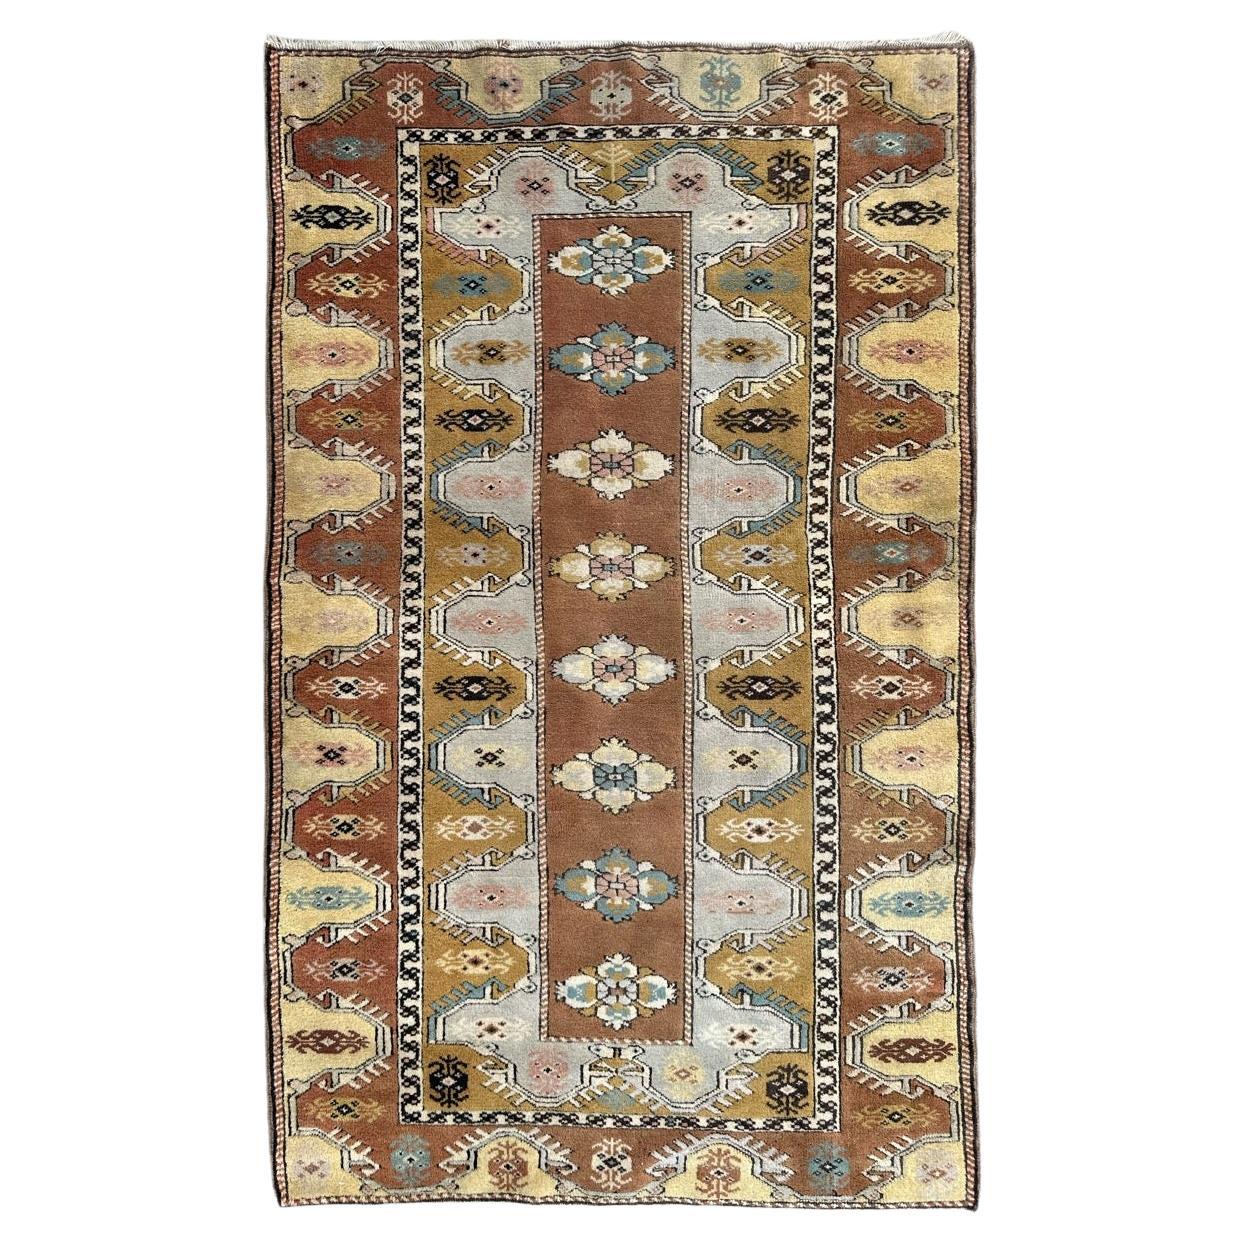 Bobyrug’s Nice vintage Turkish rug 